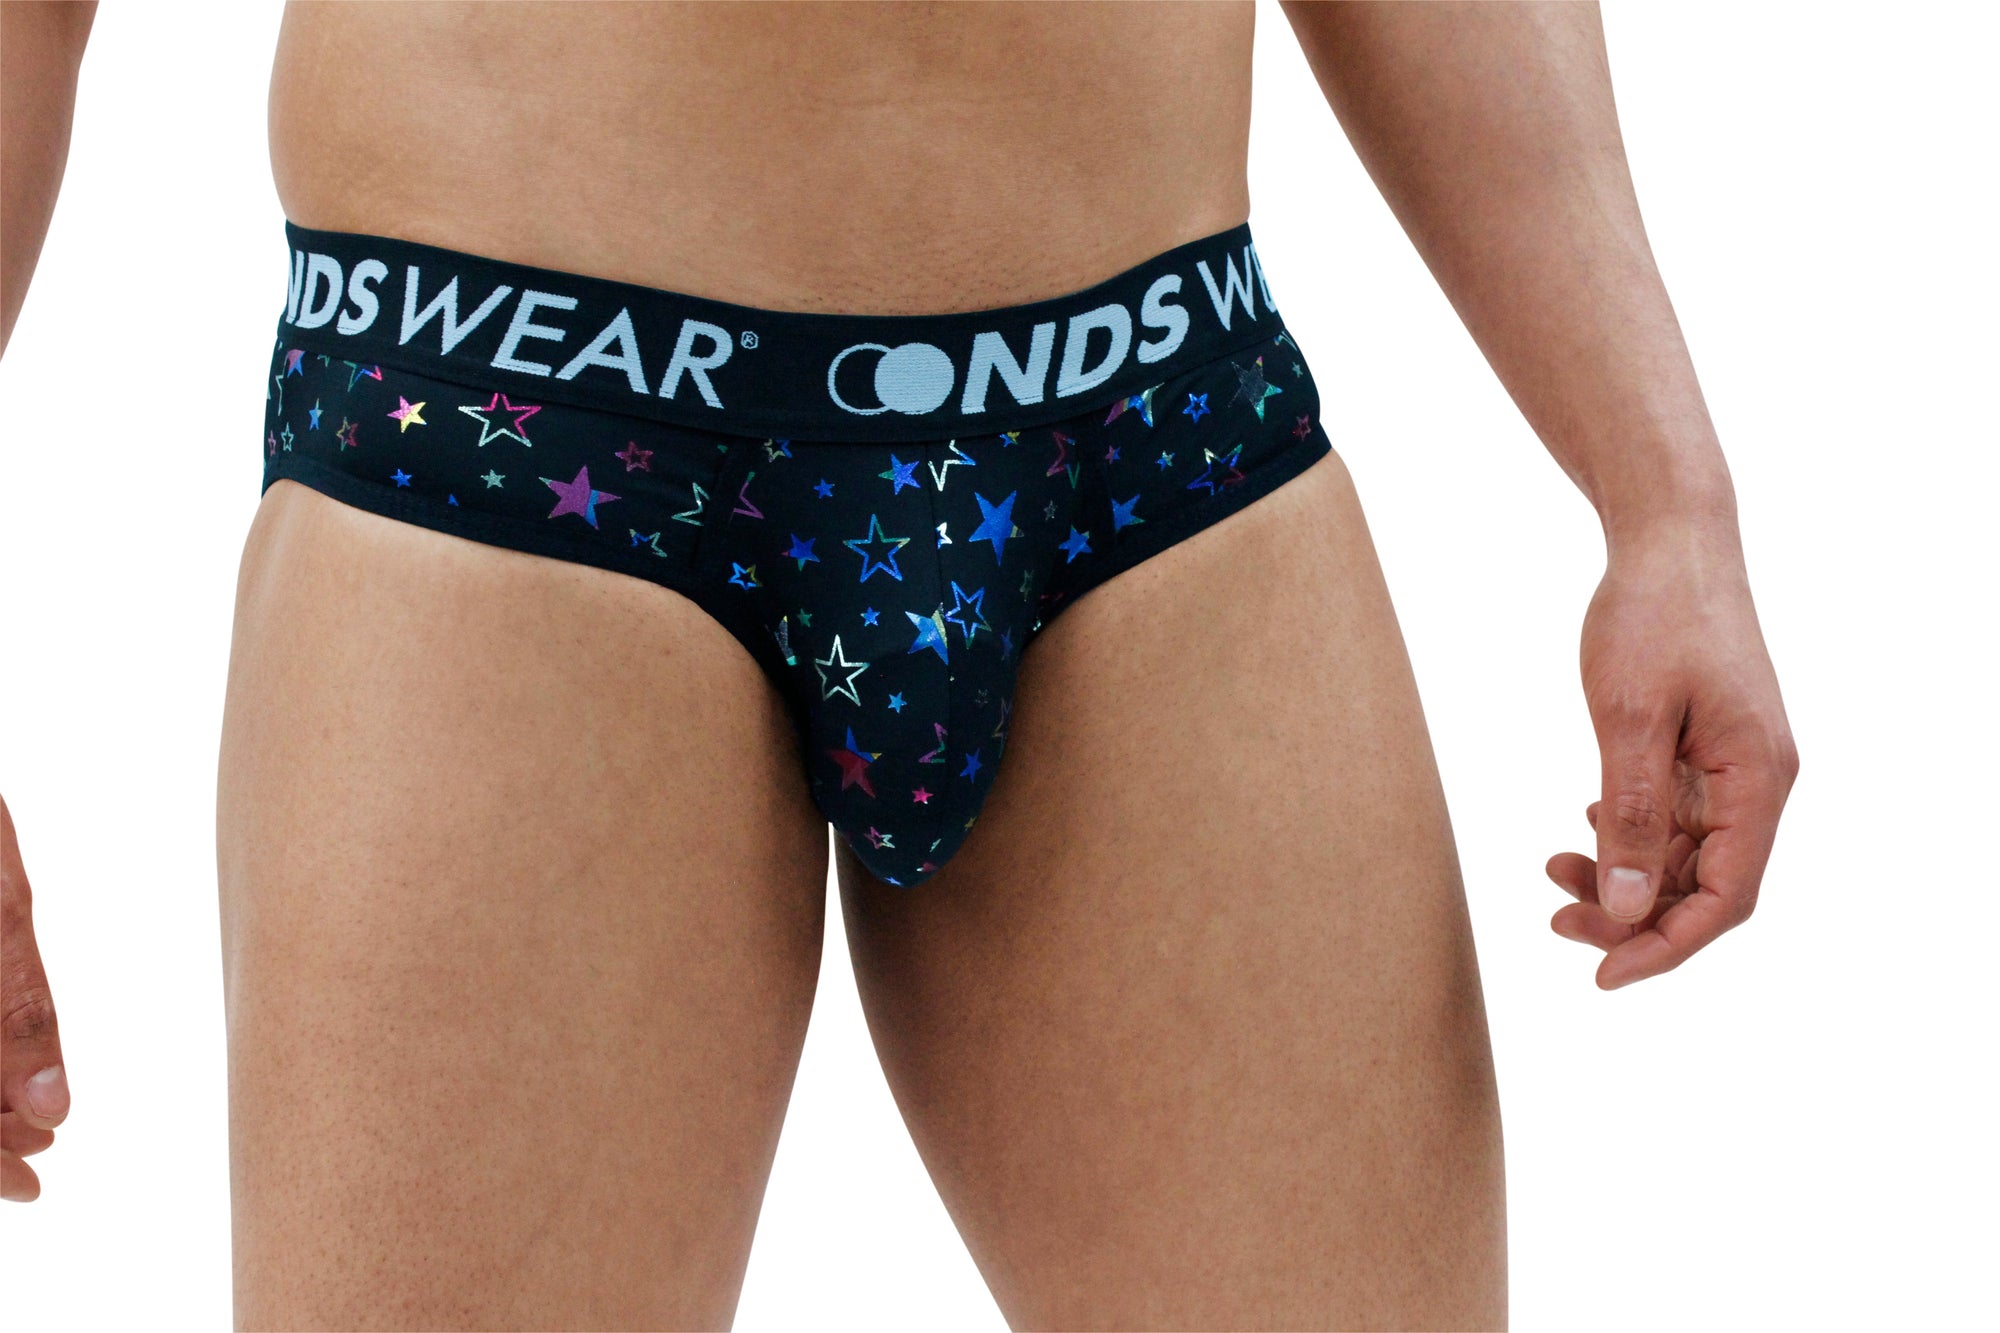 Shop NDS WEAR Premium Mesh Underwear Collection - ABC Underwear